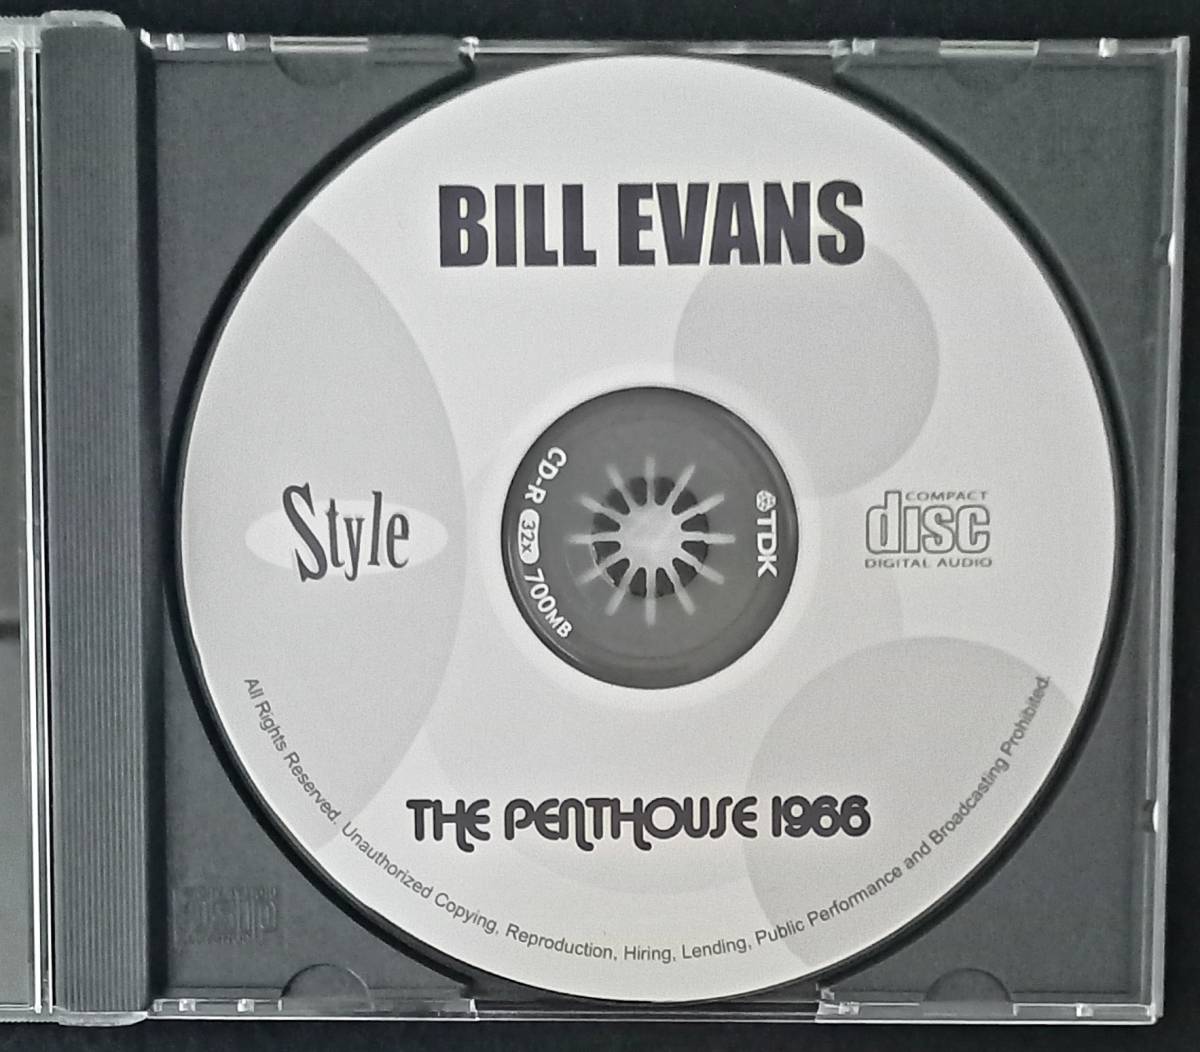 Bill Evans The Penthouse 1966 ◎ ビルエヴァンス エディゴメス ジョーハント 放送用音源 ピアノトリオ ジャズピアノ ビルエバンス _画像2